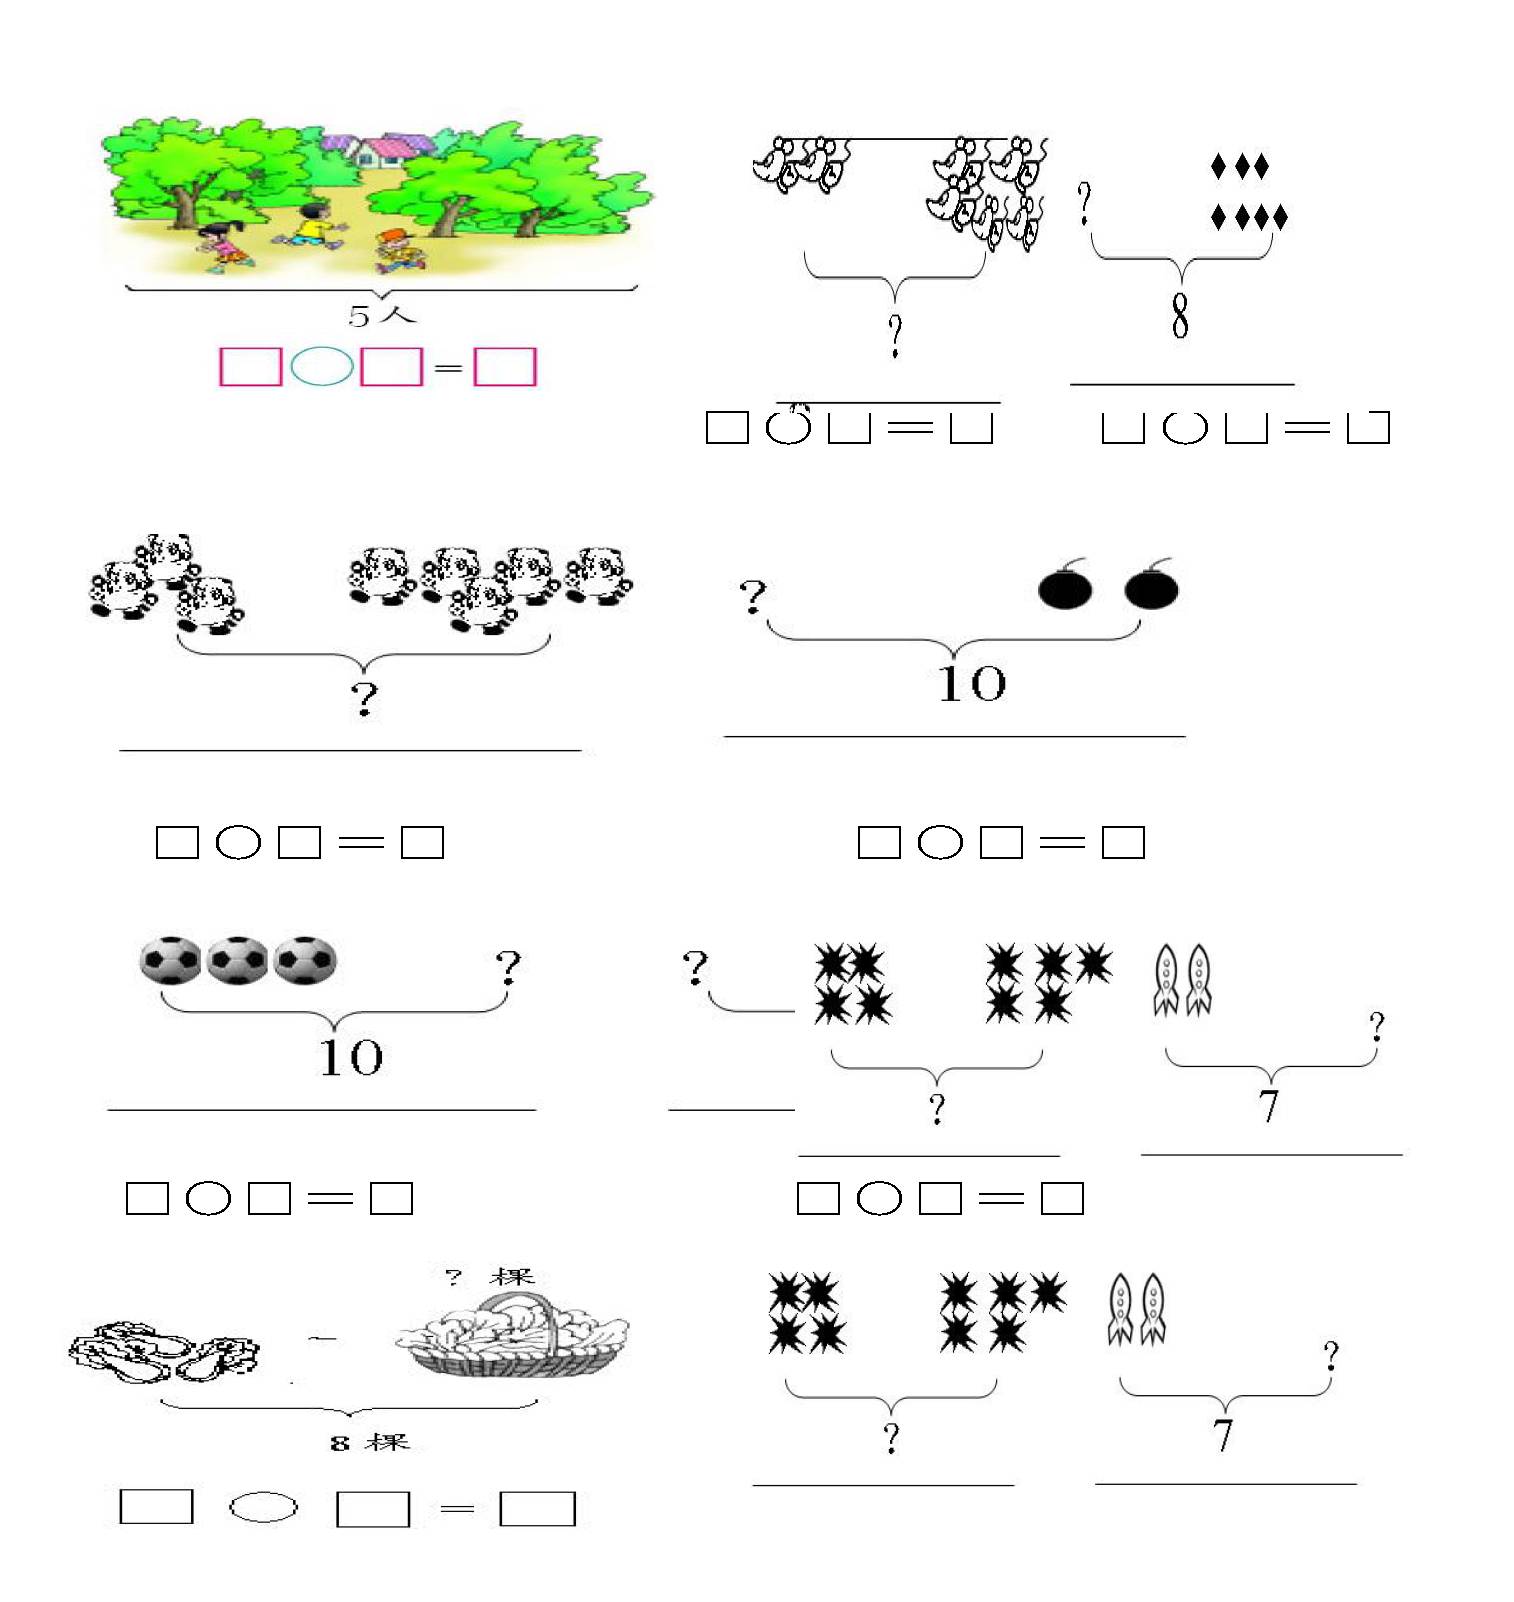 木制十档多功能算术计算架儿童智力开发数学运算算盘早教益智玩具-阿里巴巴